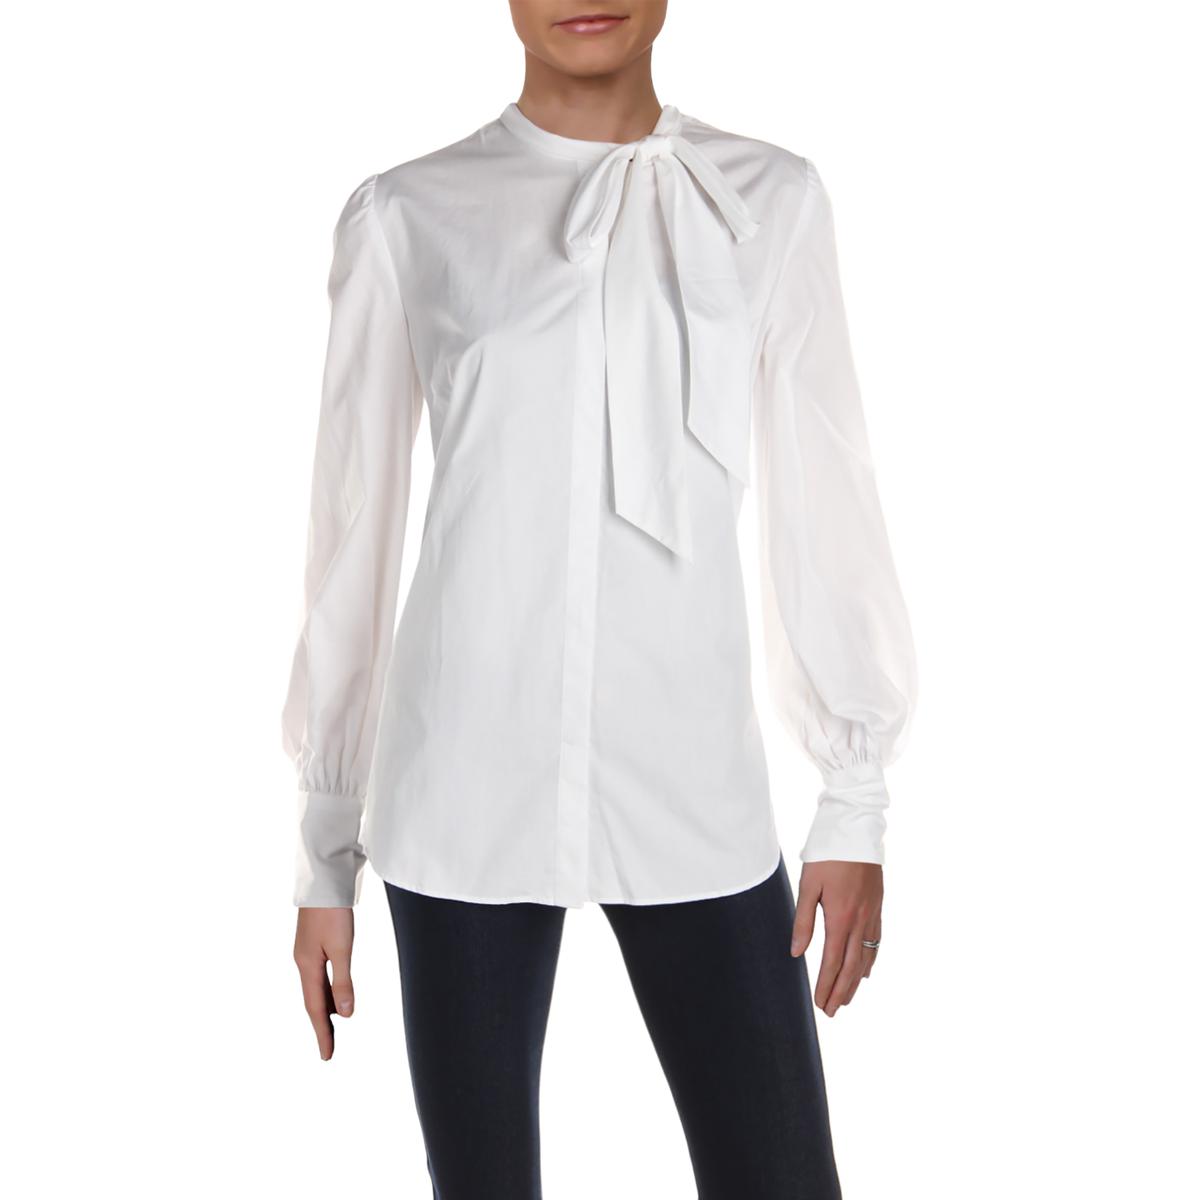 Lauren Ralph Lauren Womens White Collared Button-Down Top Shirt S BHFO ...